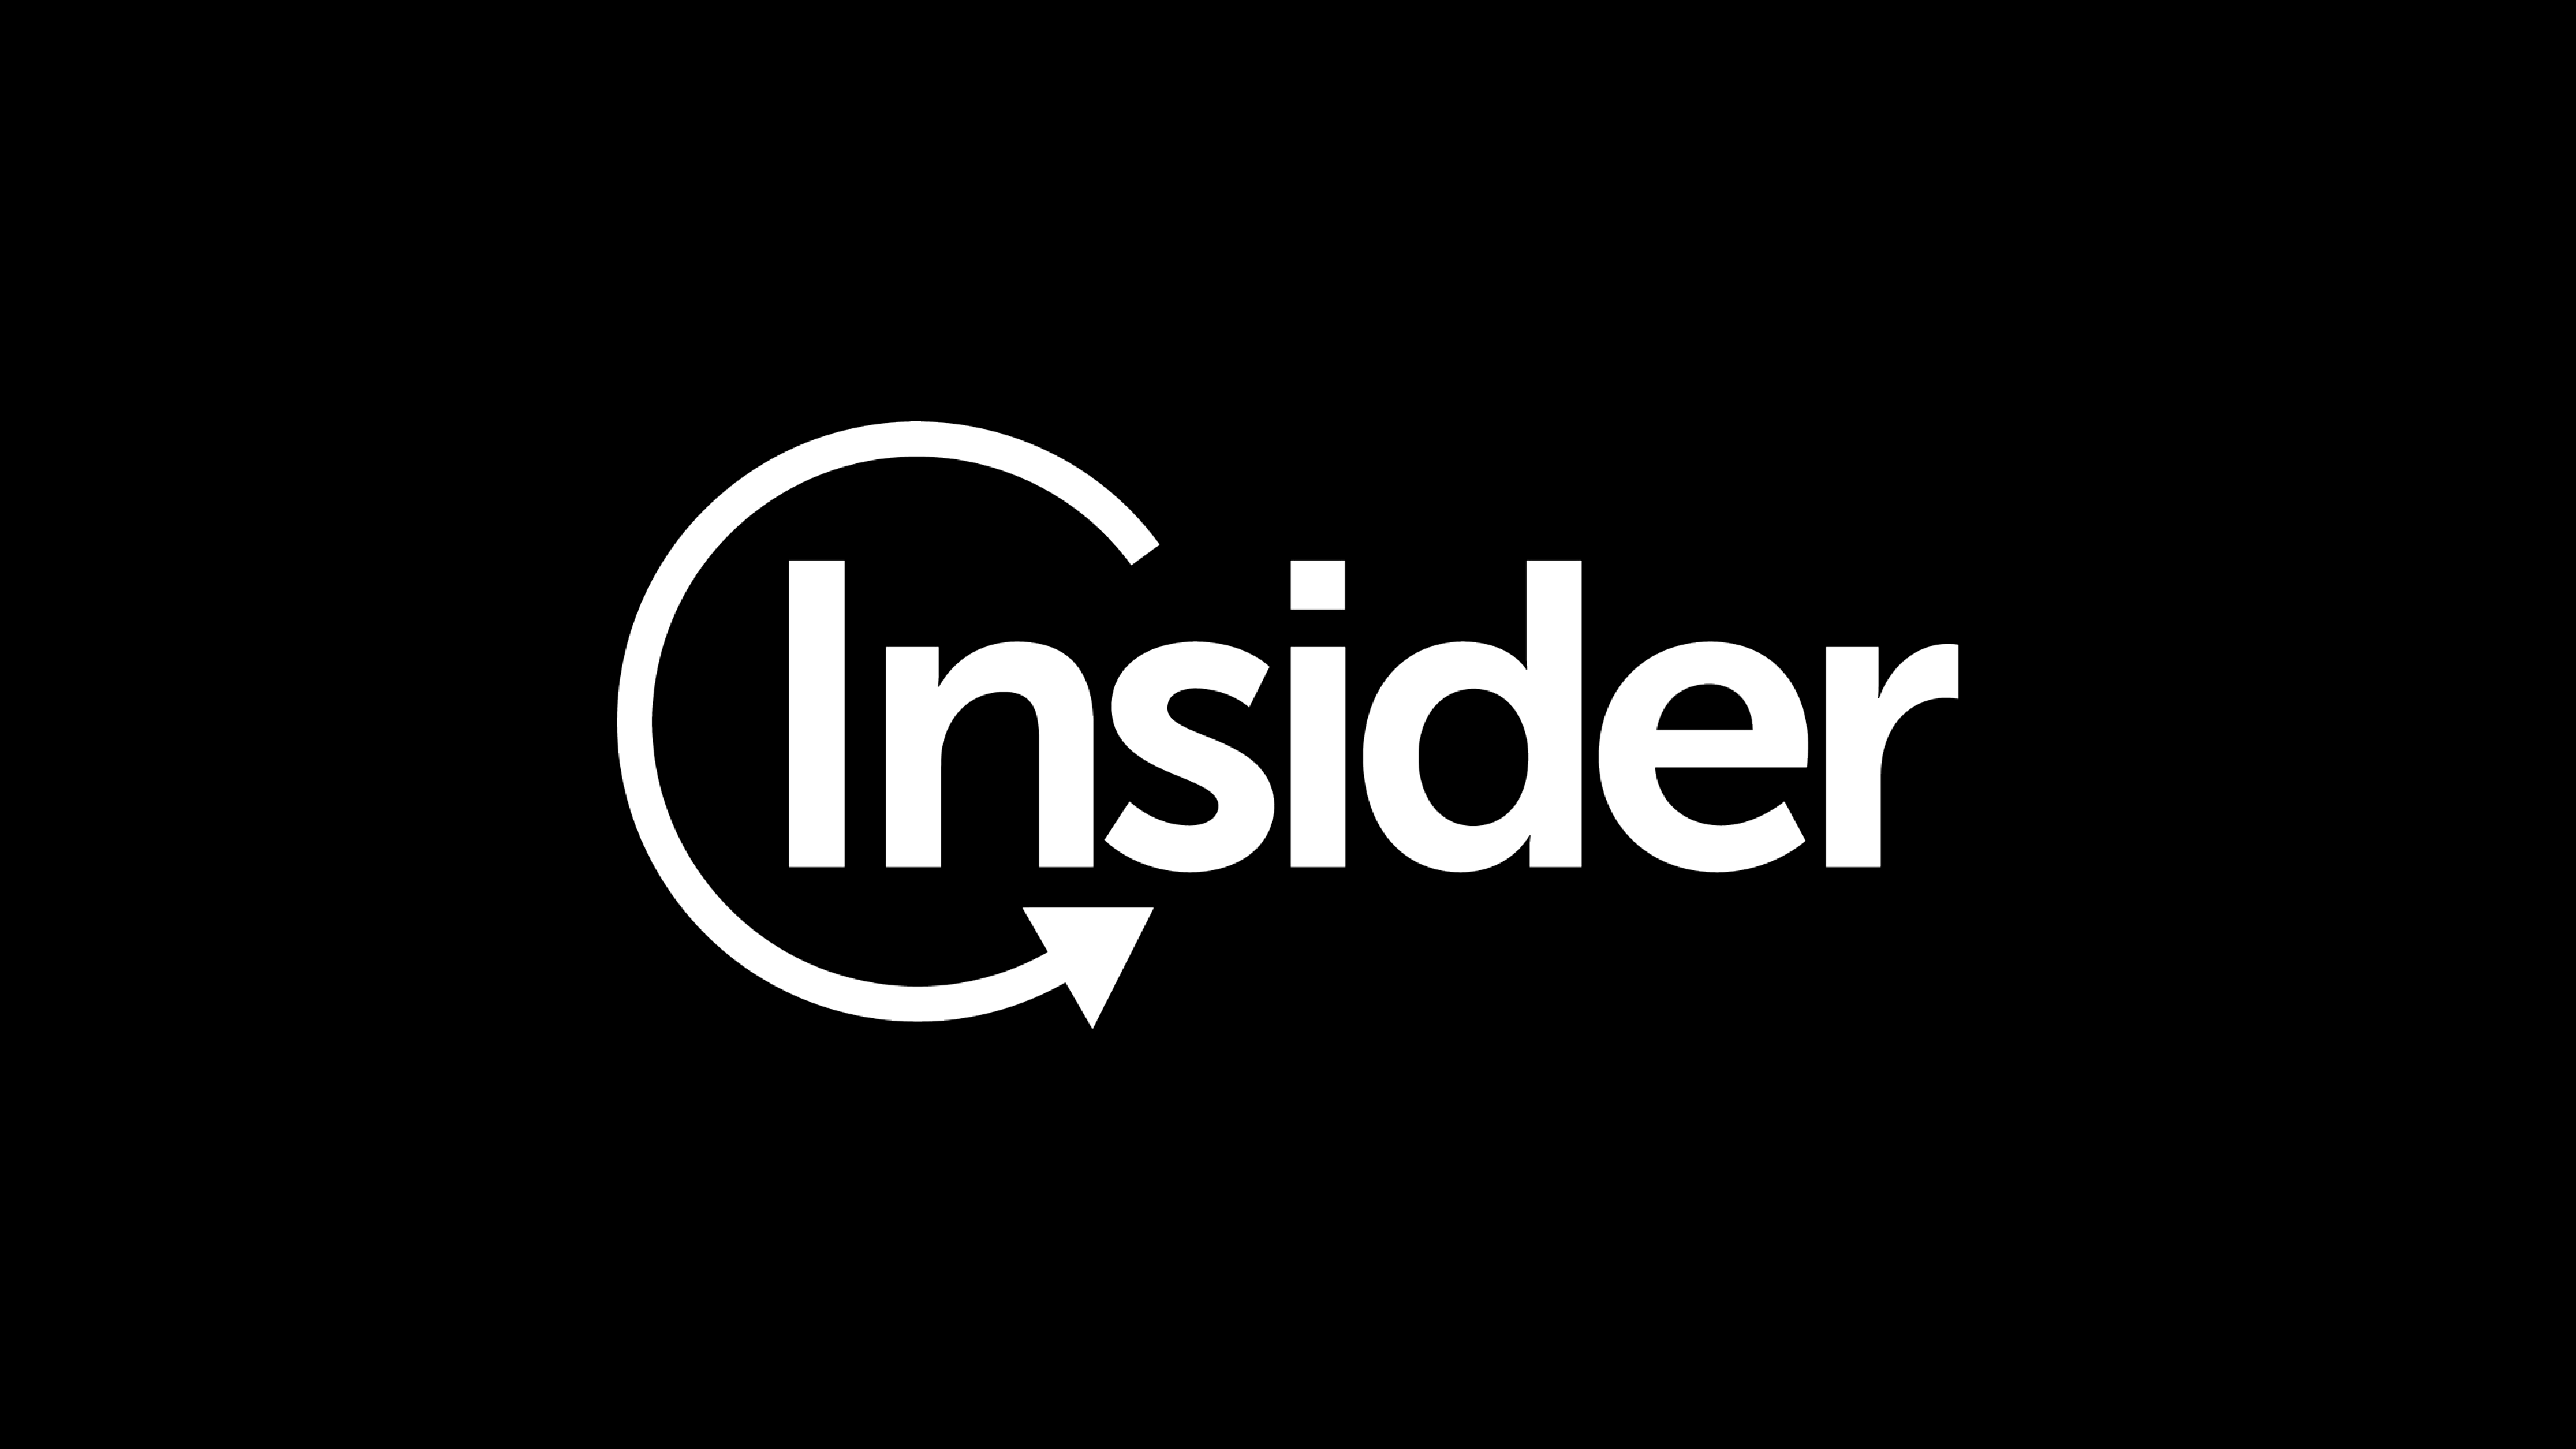 Инсайдерская торговля. The Insider логотип. Инсайдер. Инсайдеры картинки. Инсайдер надпись.